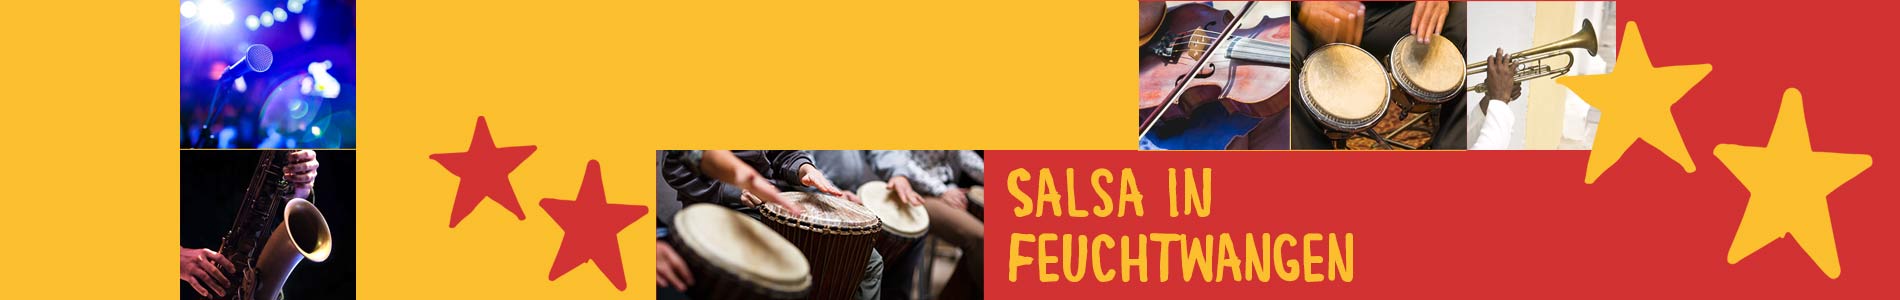 Salsa in Feuchtwangen – Salsa lernen und tanzen, Tanzkurse, Partys, Veranstaltungen